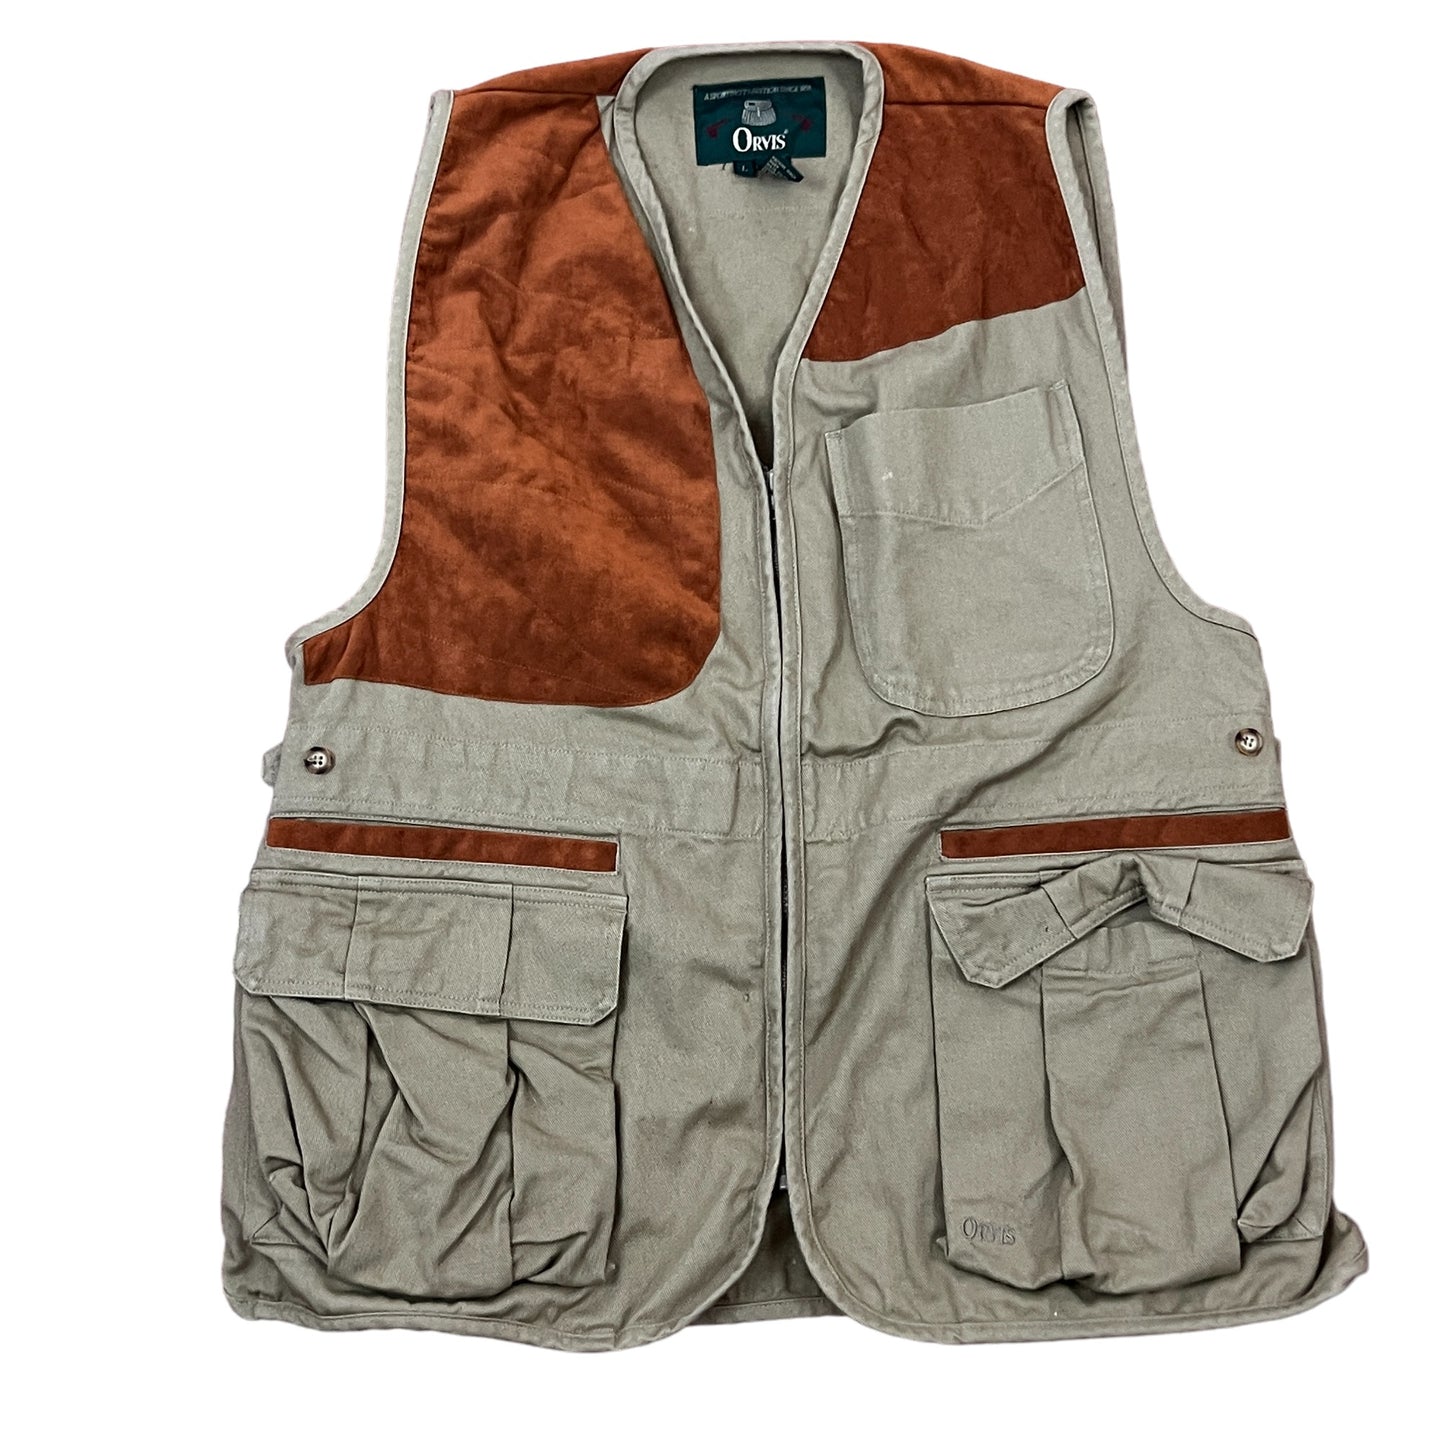 Orvis 100% Cotton Fishing Vest Size Large